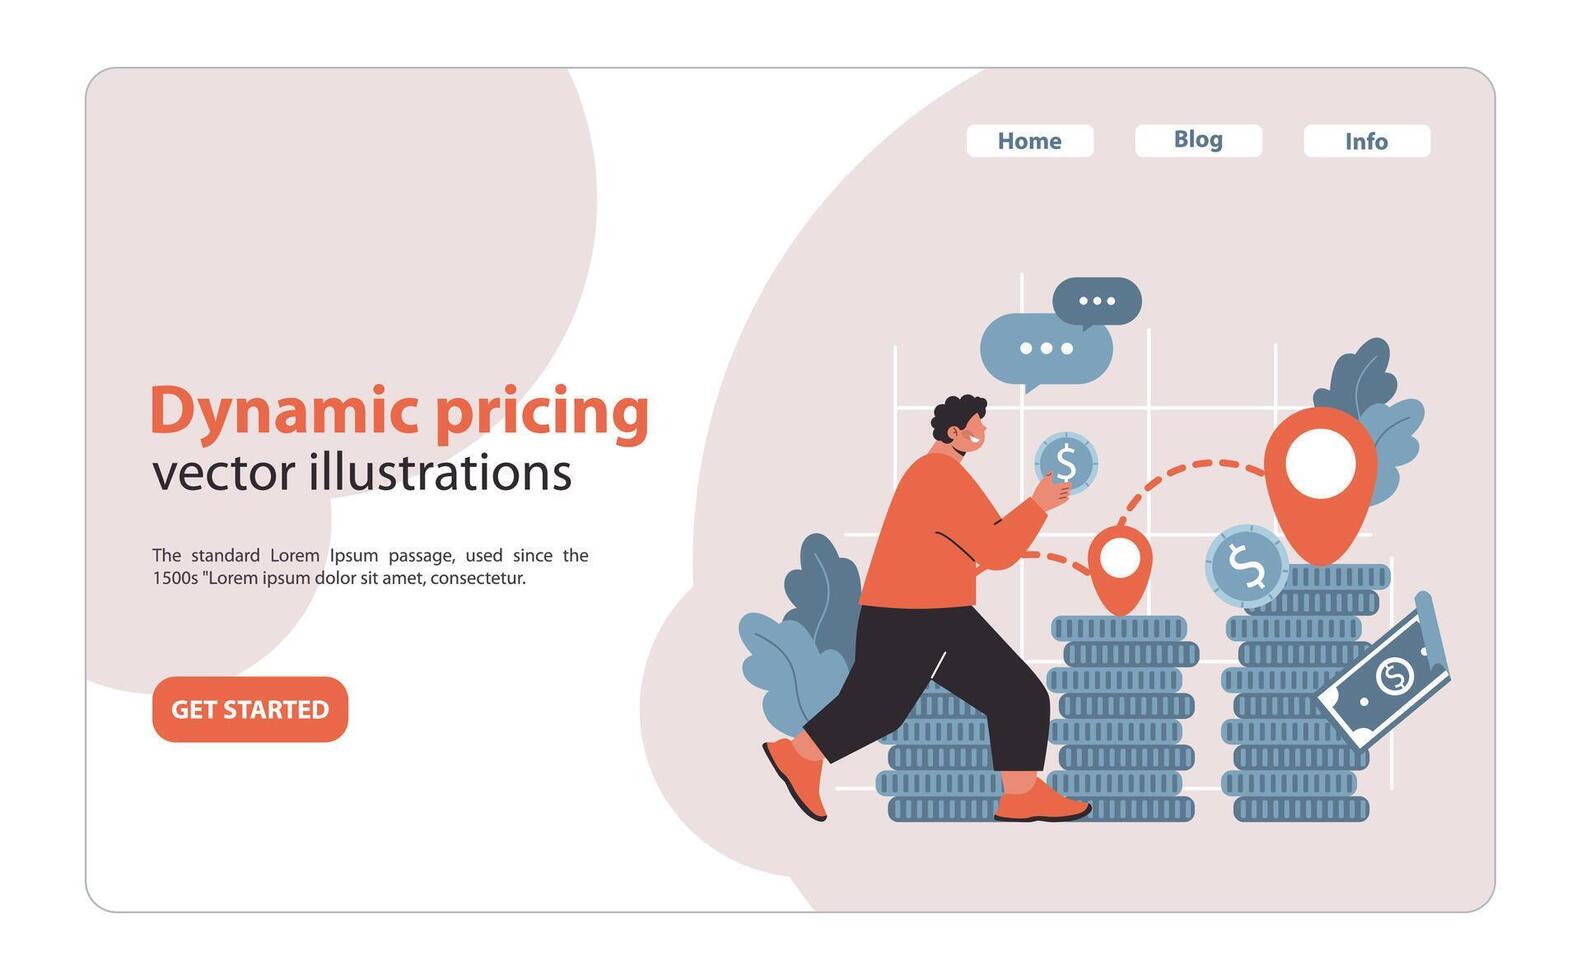 dynamisch Preisgestaltung Strategie. ein agil Ansatz zu Preisgestaltung basierend auf Markt Nachfrage und Kosten Analyse. vektor